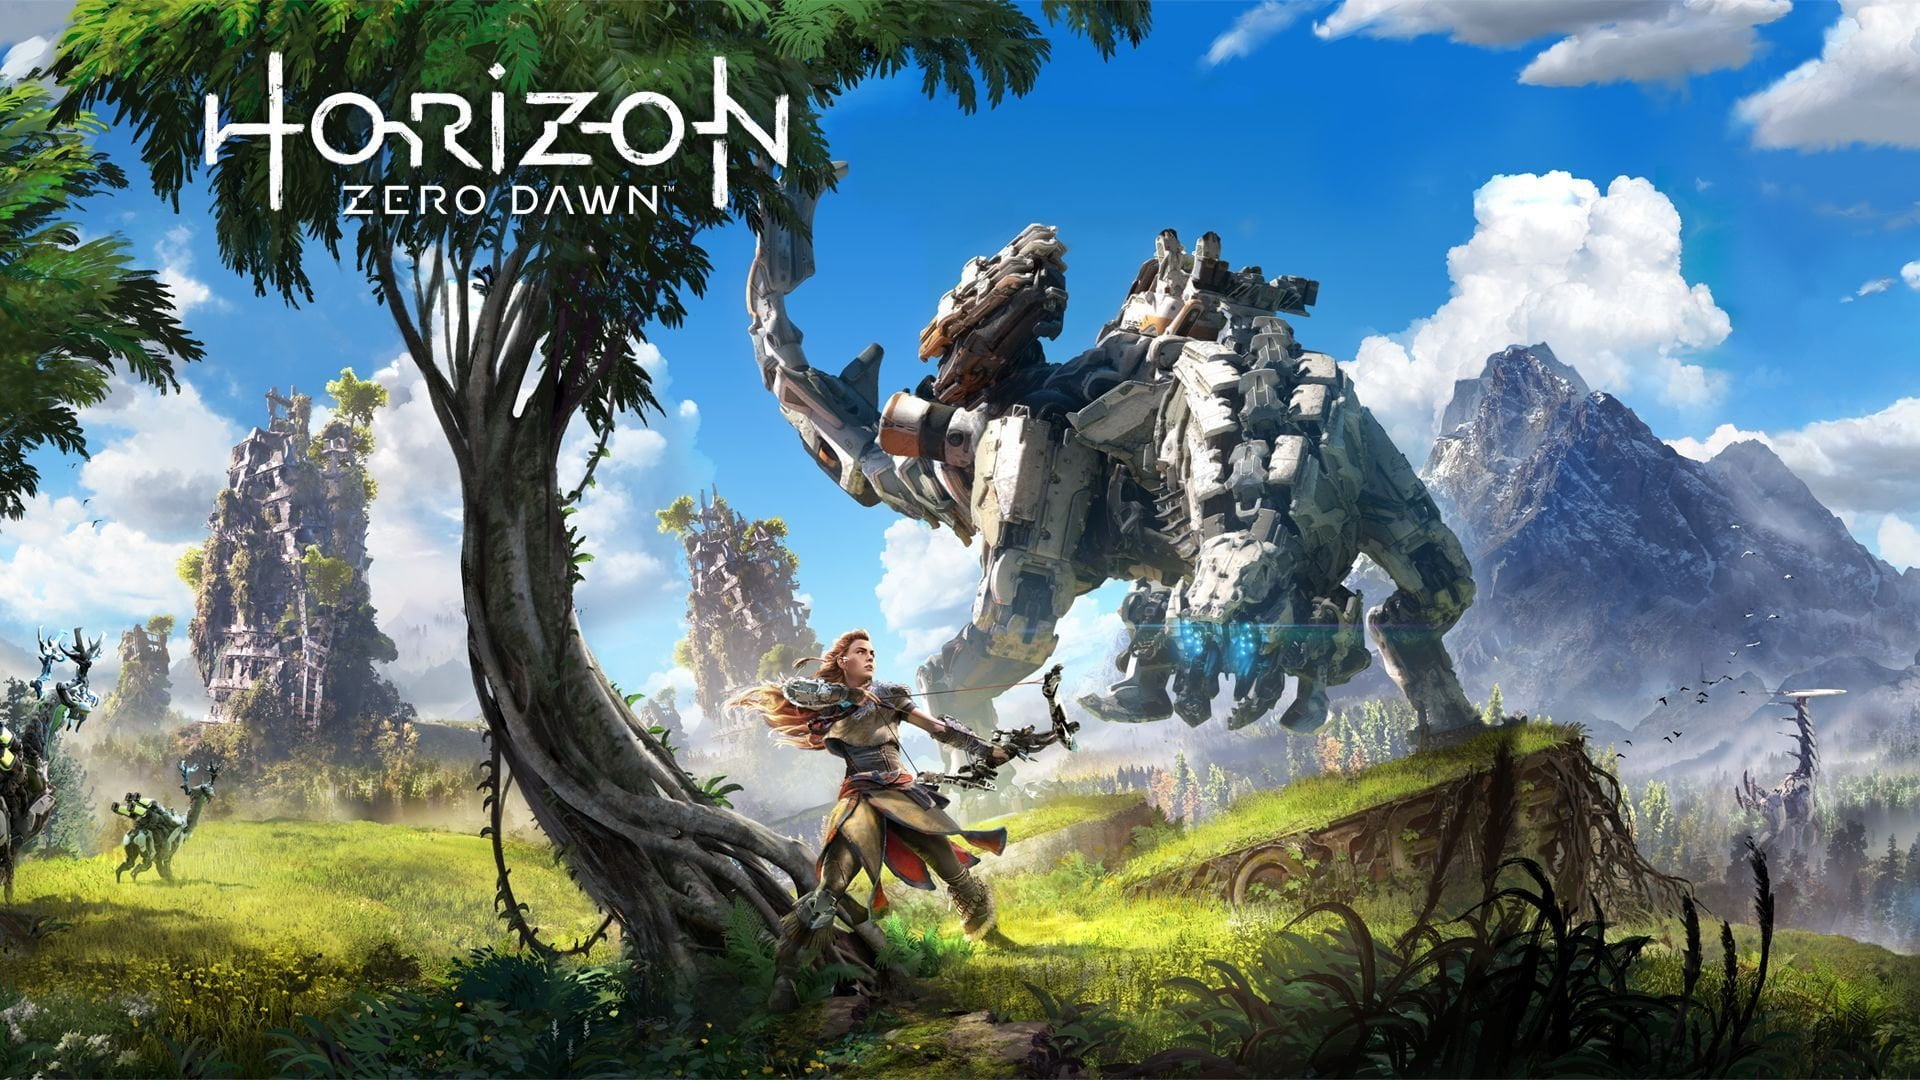 Horizon zero dawn: jogo chegará ao pc | thumb 1920 718467 | guerrilla games, horizon zero dawn, pc, playstation 4 | saber se o jogo roda no pc dicas/guias